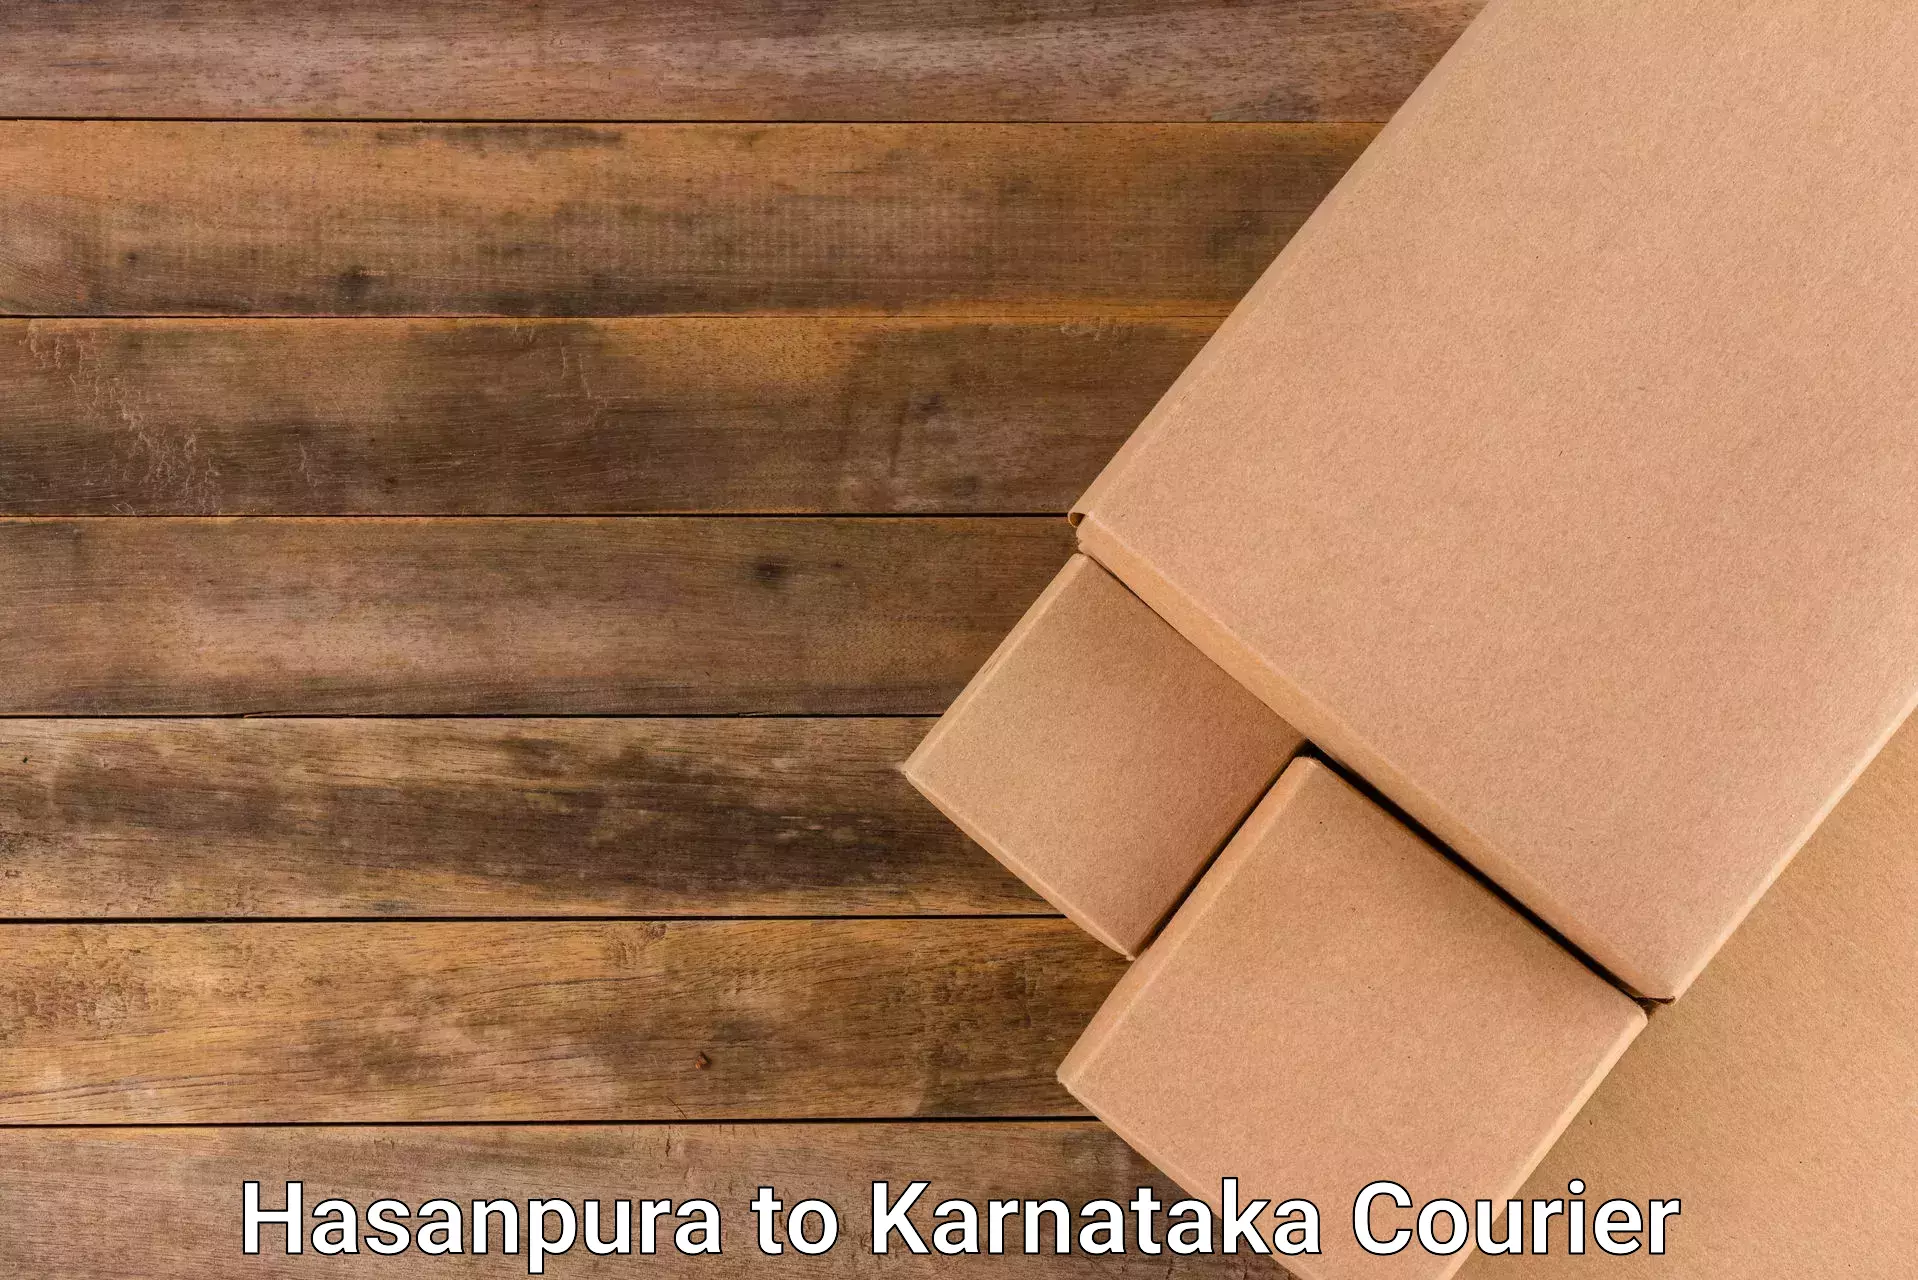 International courier networks Hasanpura to Uttara Kannada